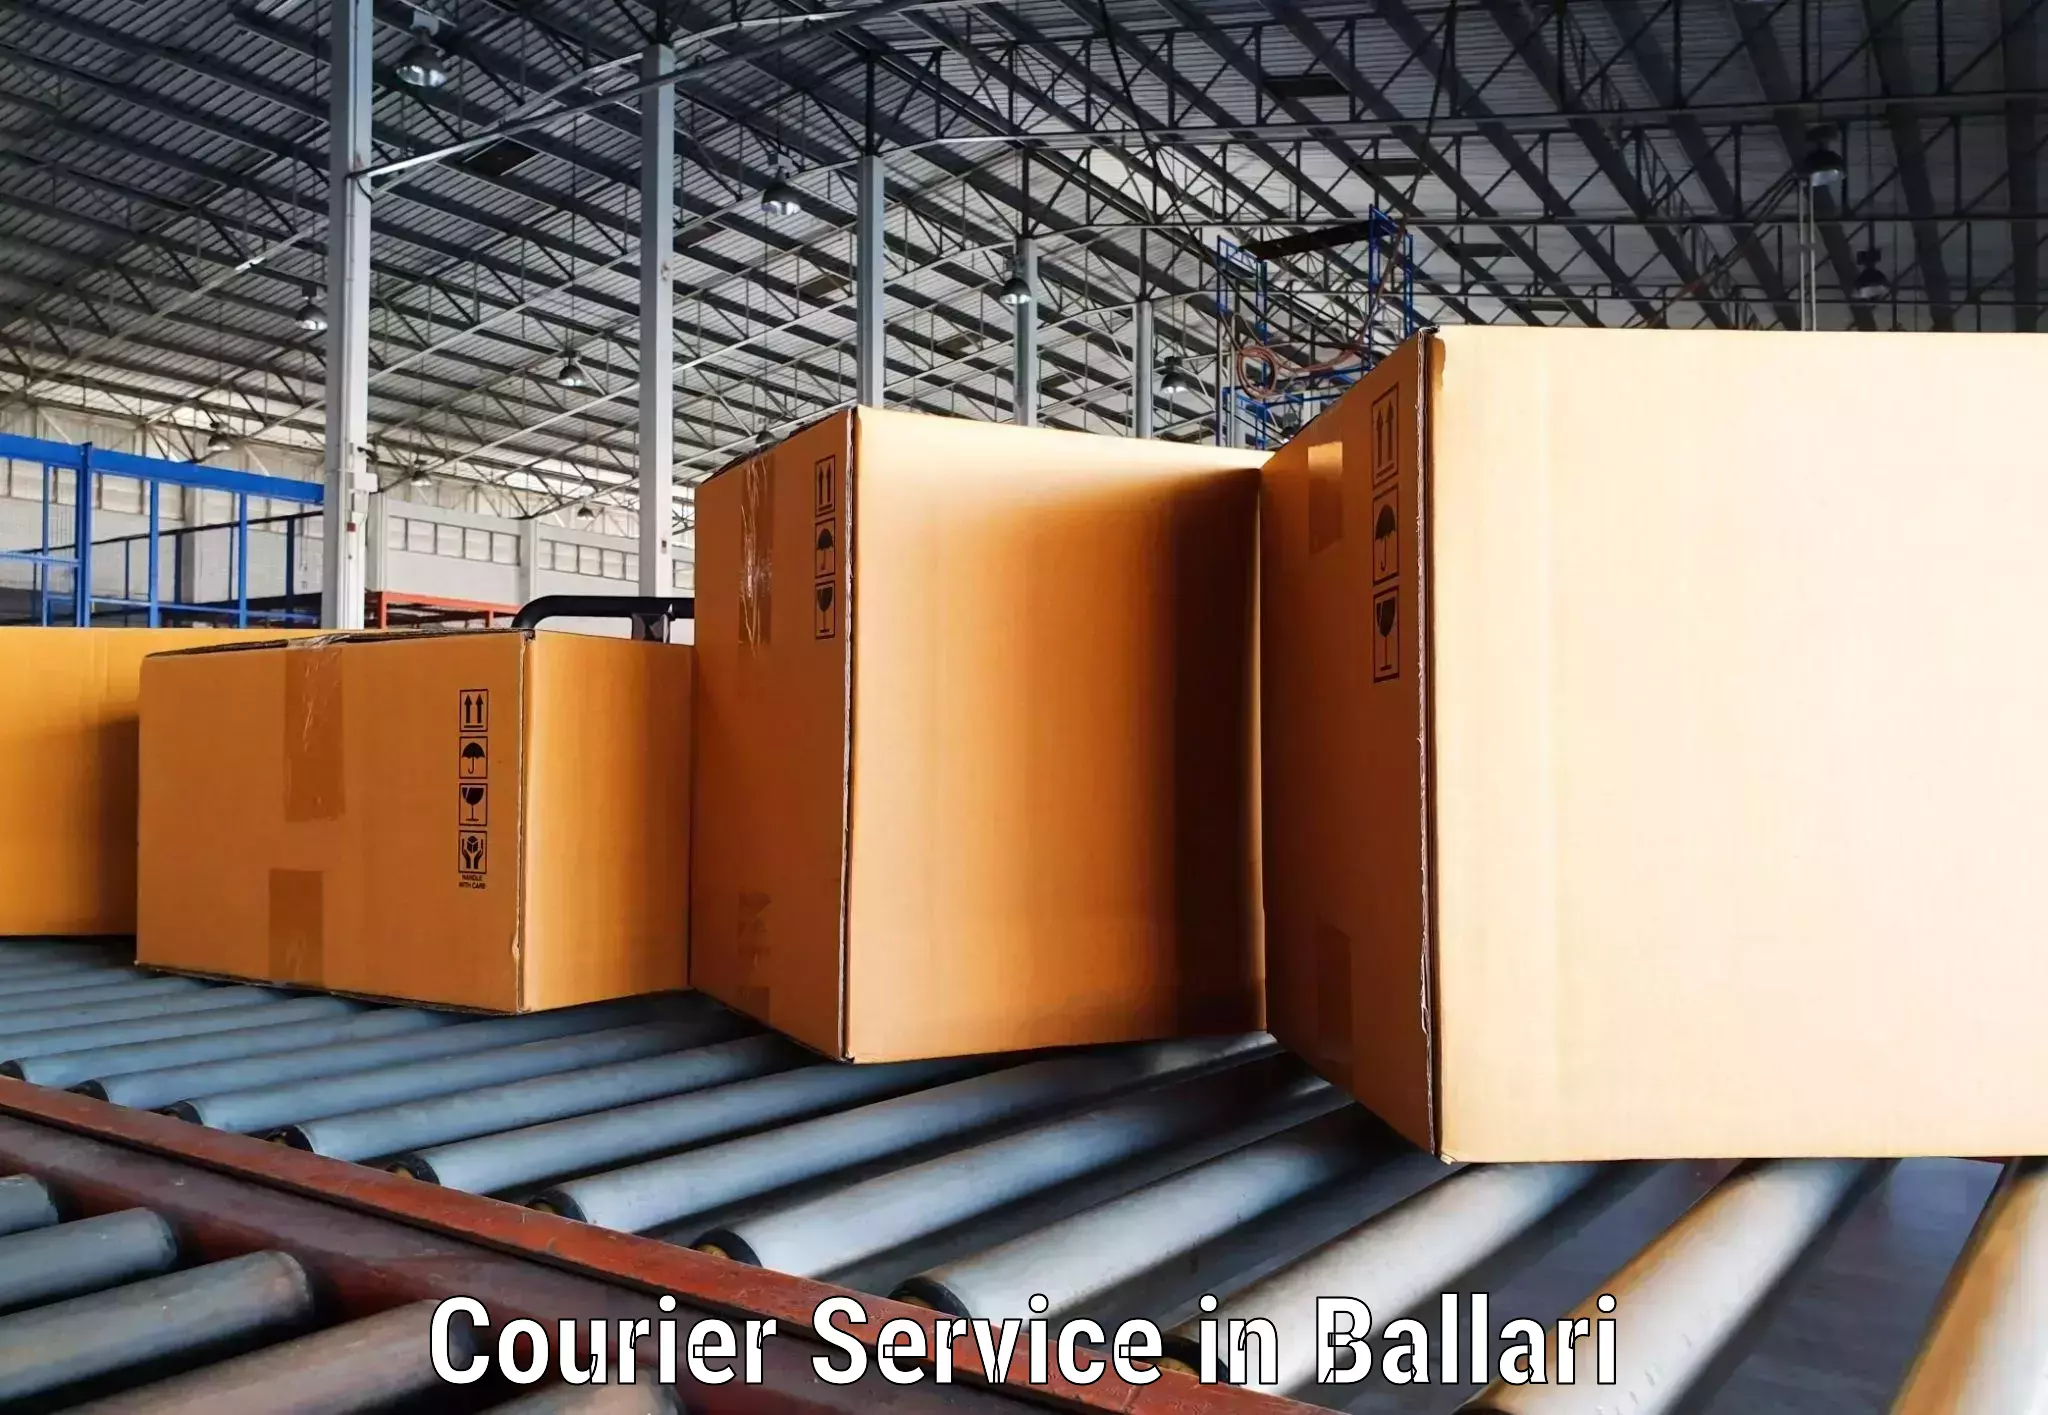 Urgent courier needs in Ballari